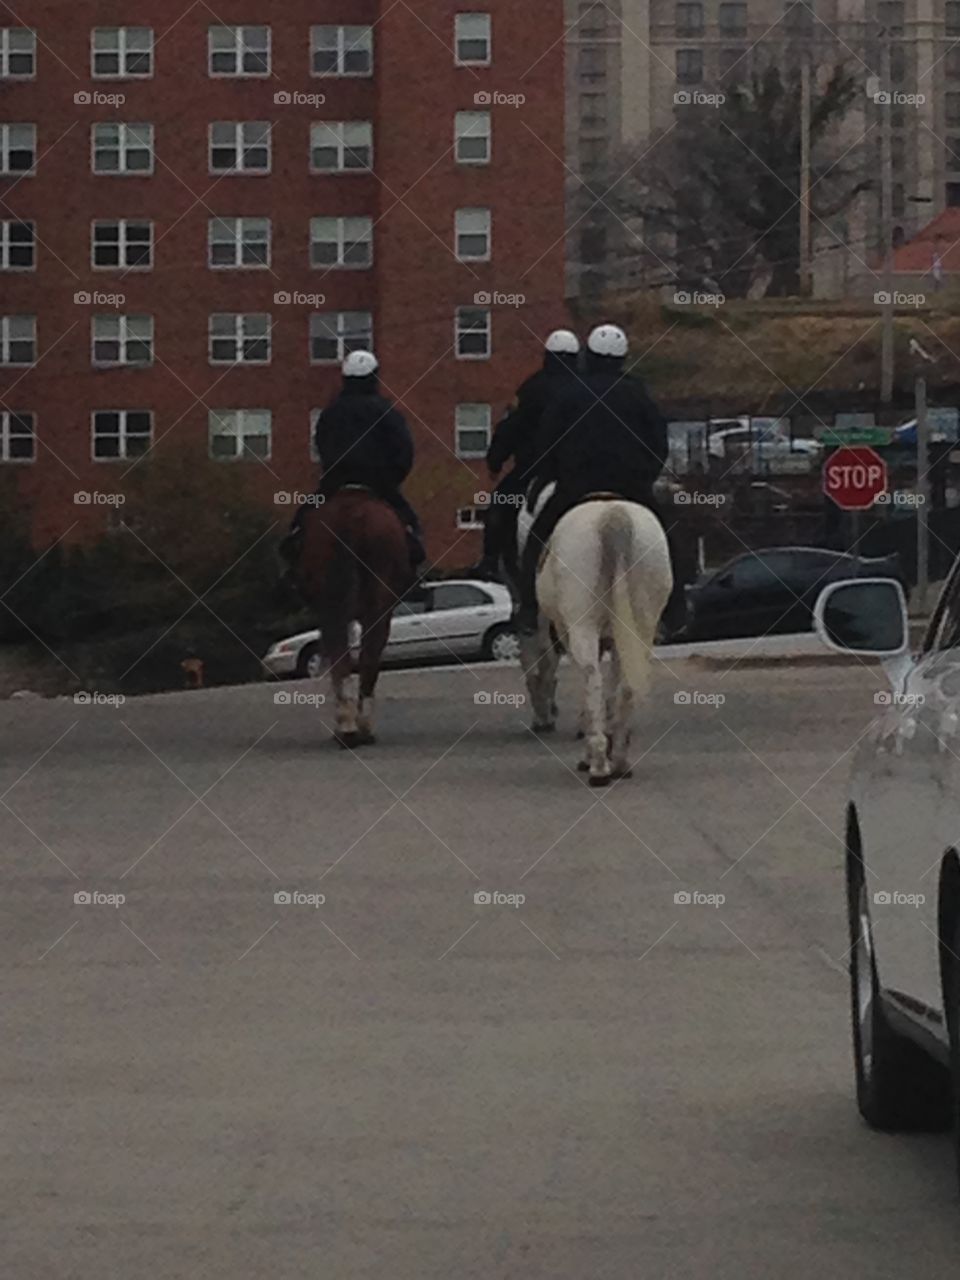 Policemen on horseback